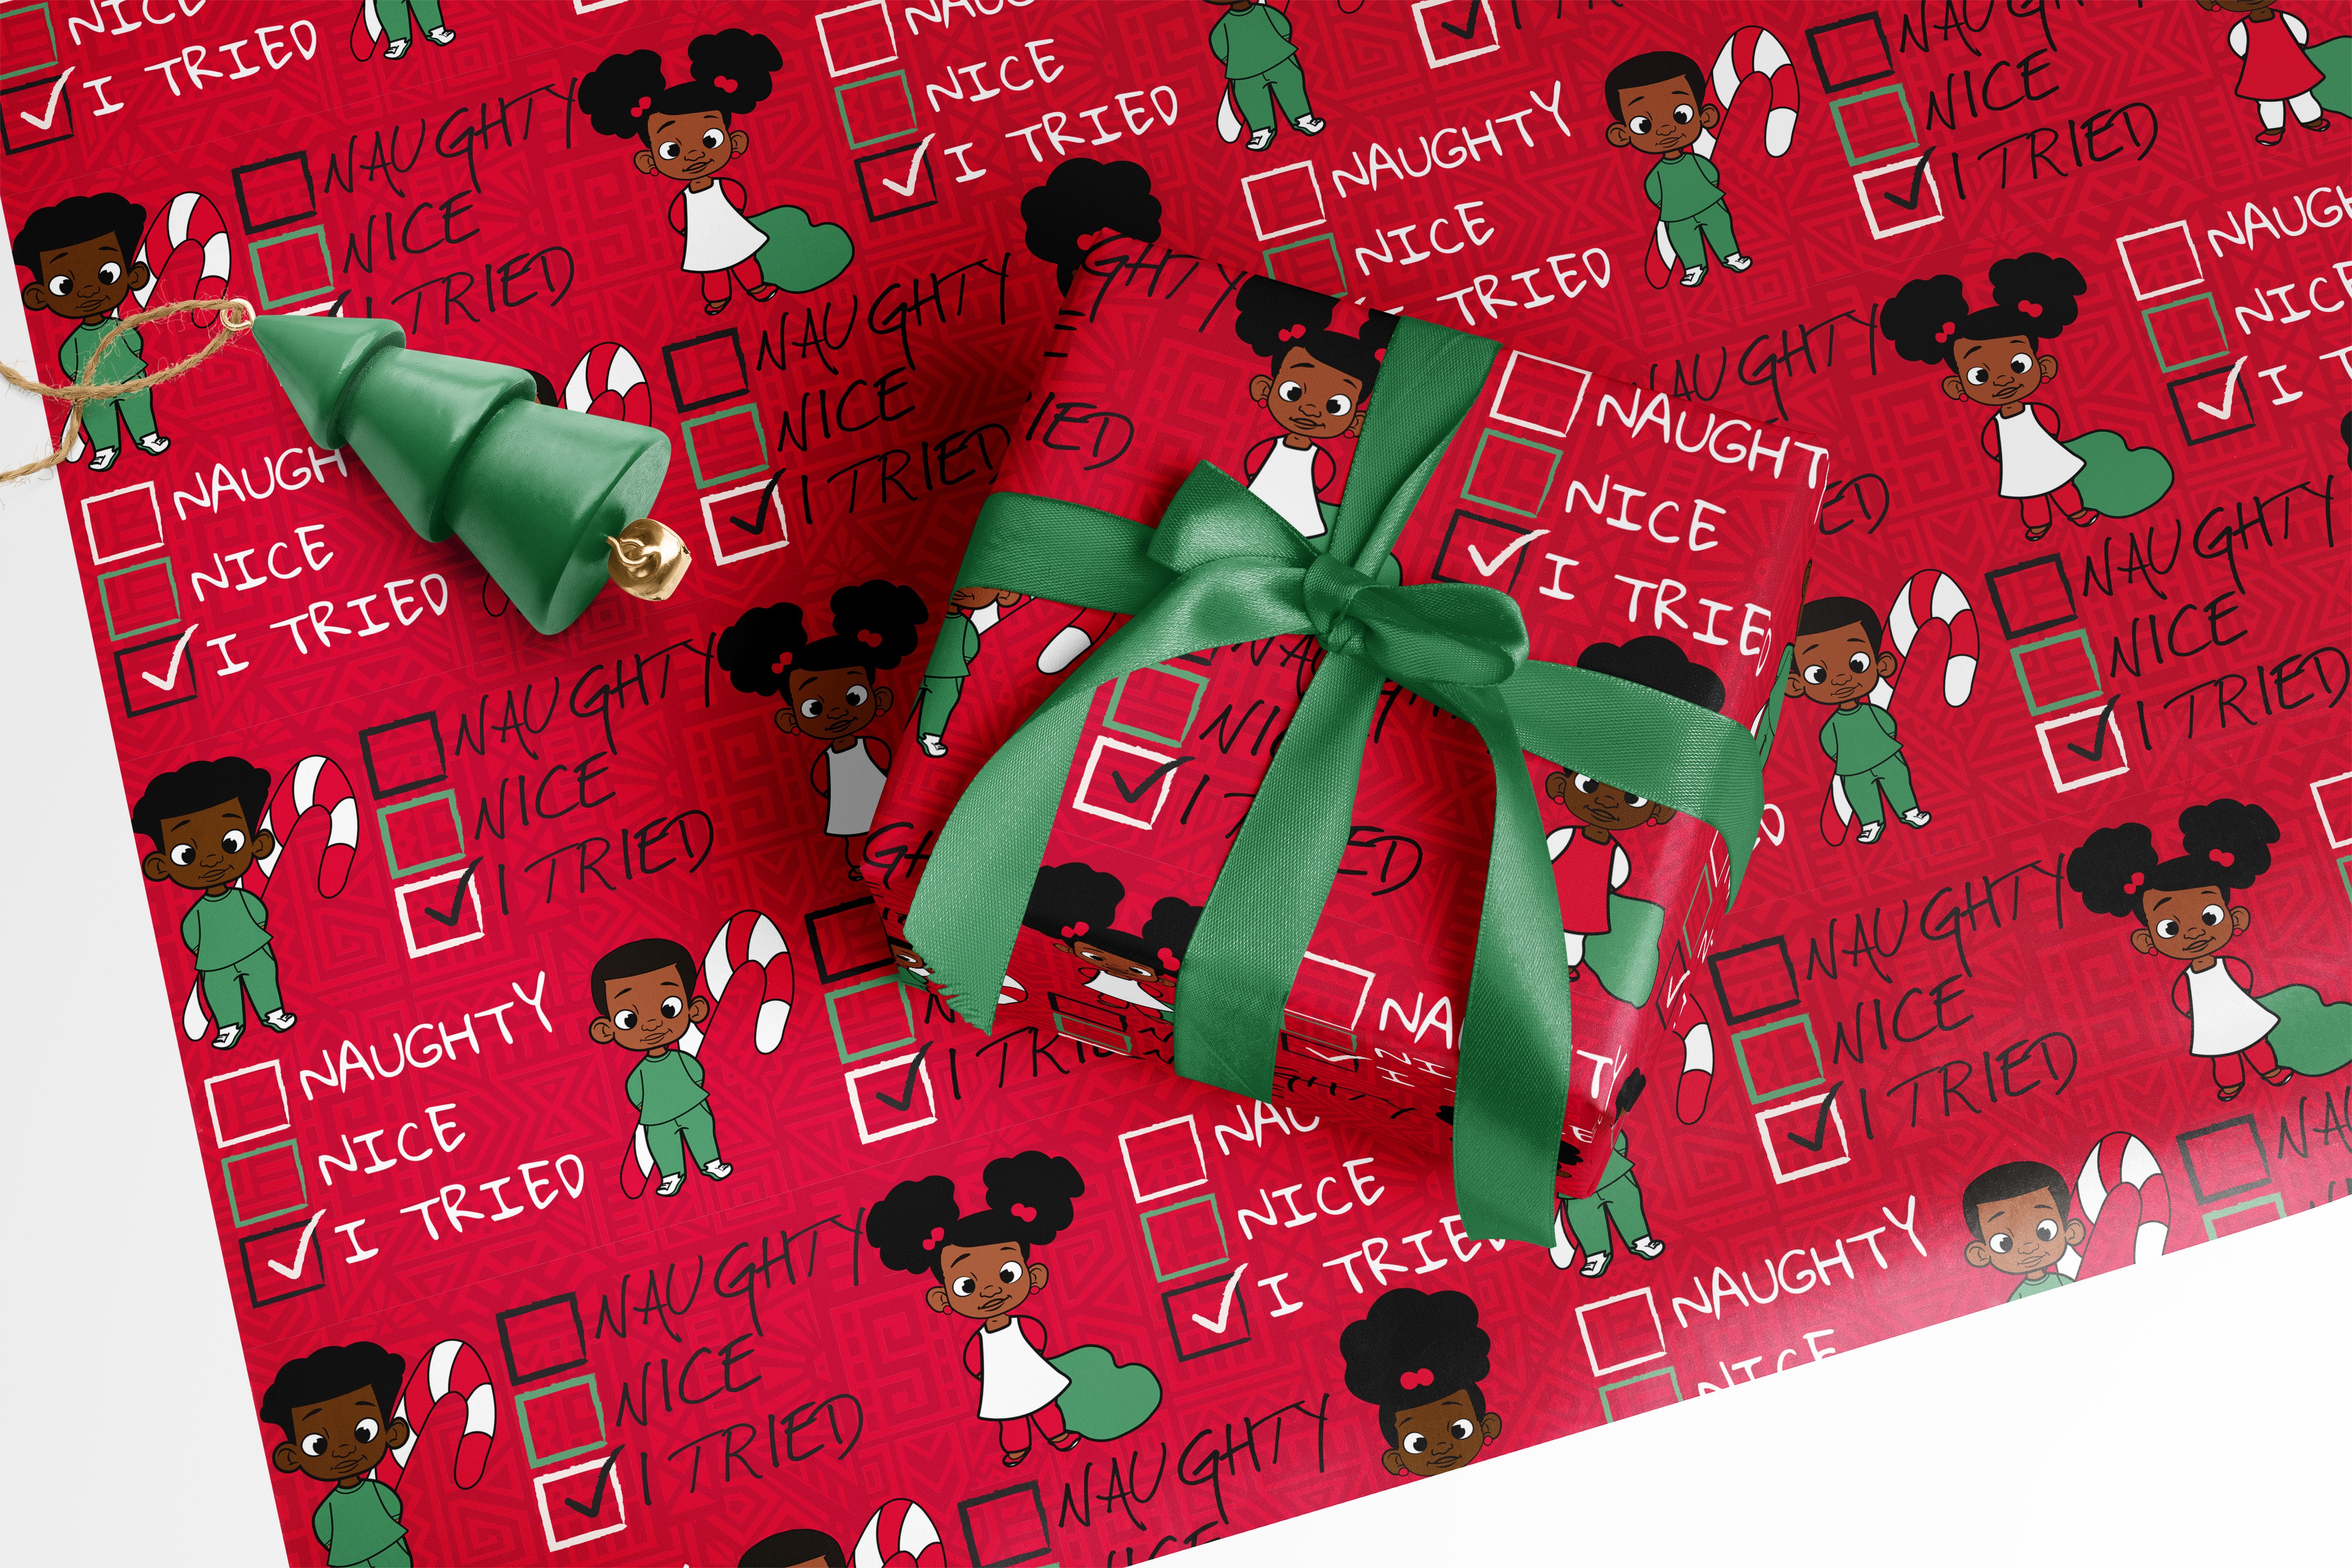 4 Words: Matte Black Gift Wrap : r/oddlysatisfying